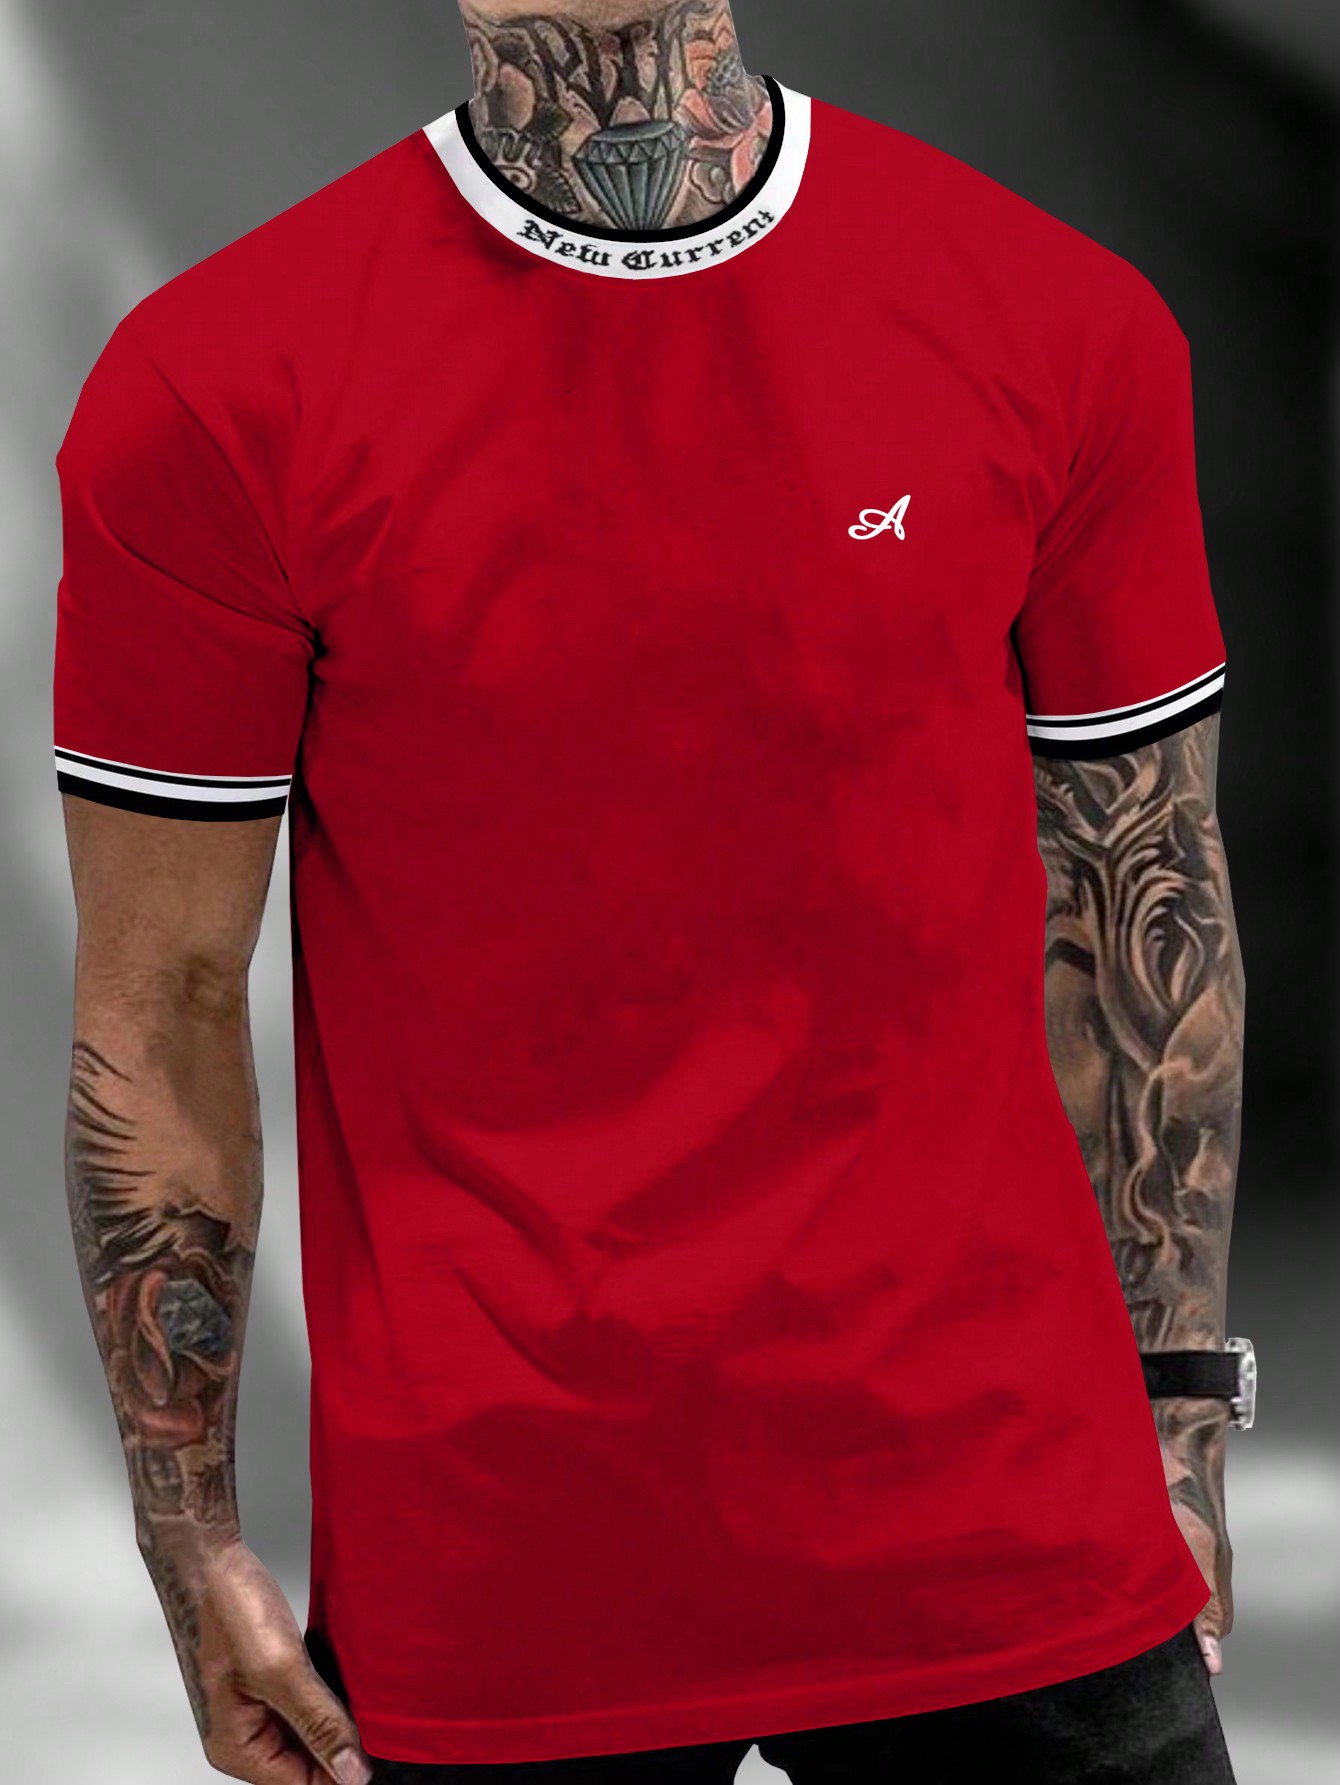 Мужская футболка с контрастным буквенным принтом Manfinity Homme и декоративной окантовкой, красный футболка мужская с контрастной отделкой madison 170 голубой белый размер xl